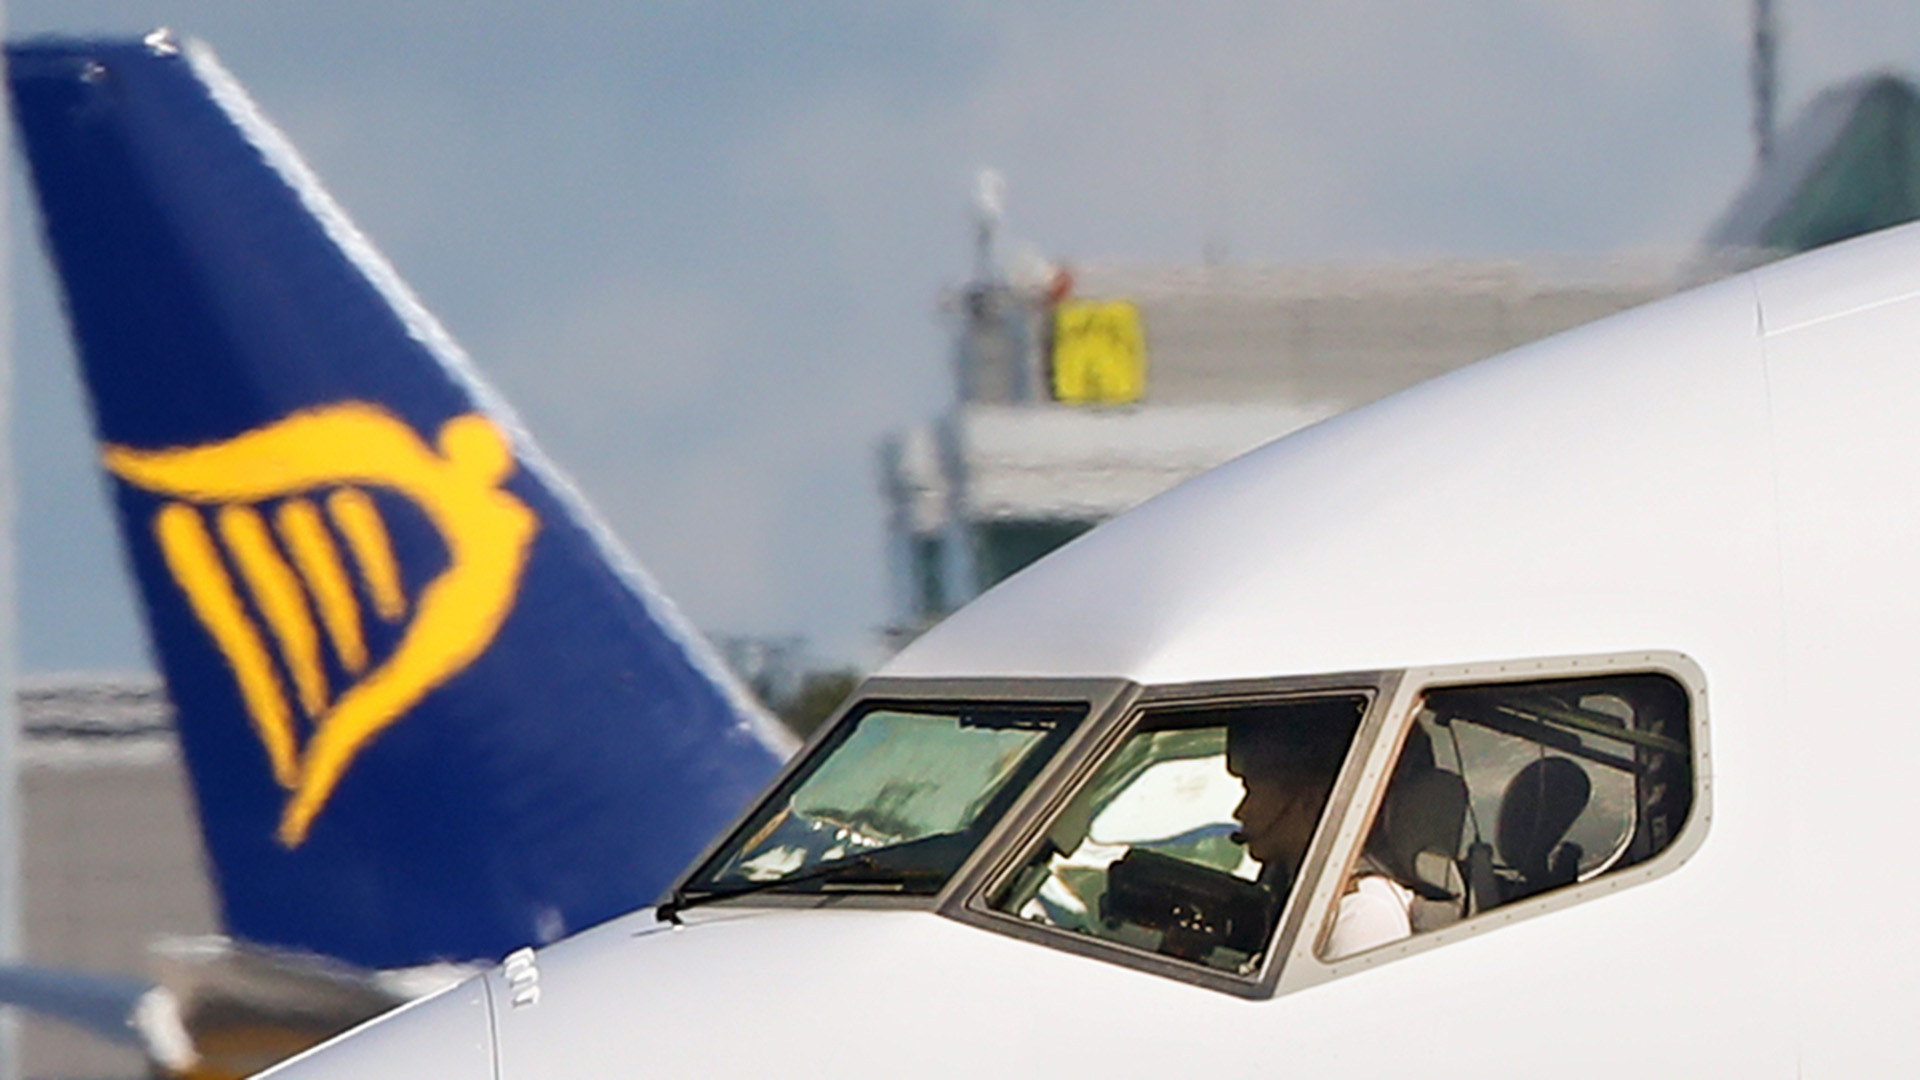 Ein Ryanair-Flieger steht am Flughafen Frankfurt-Hahn.  | Bildquelle: REUTERS